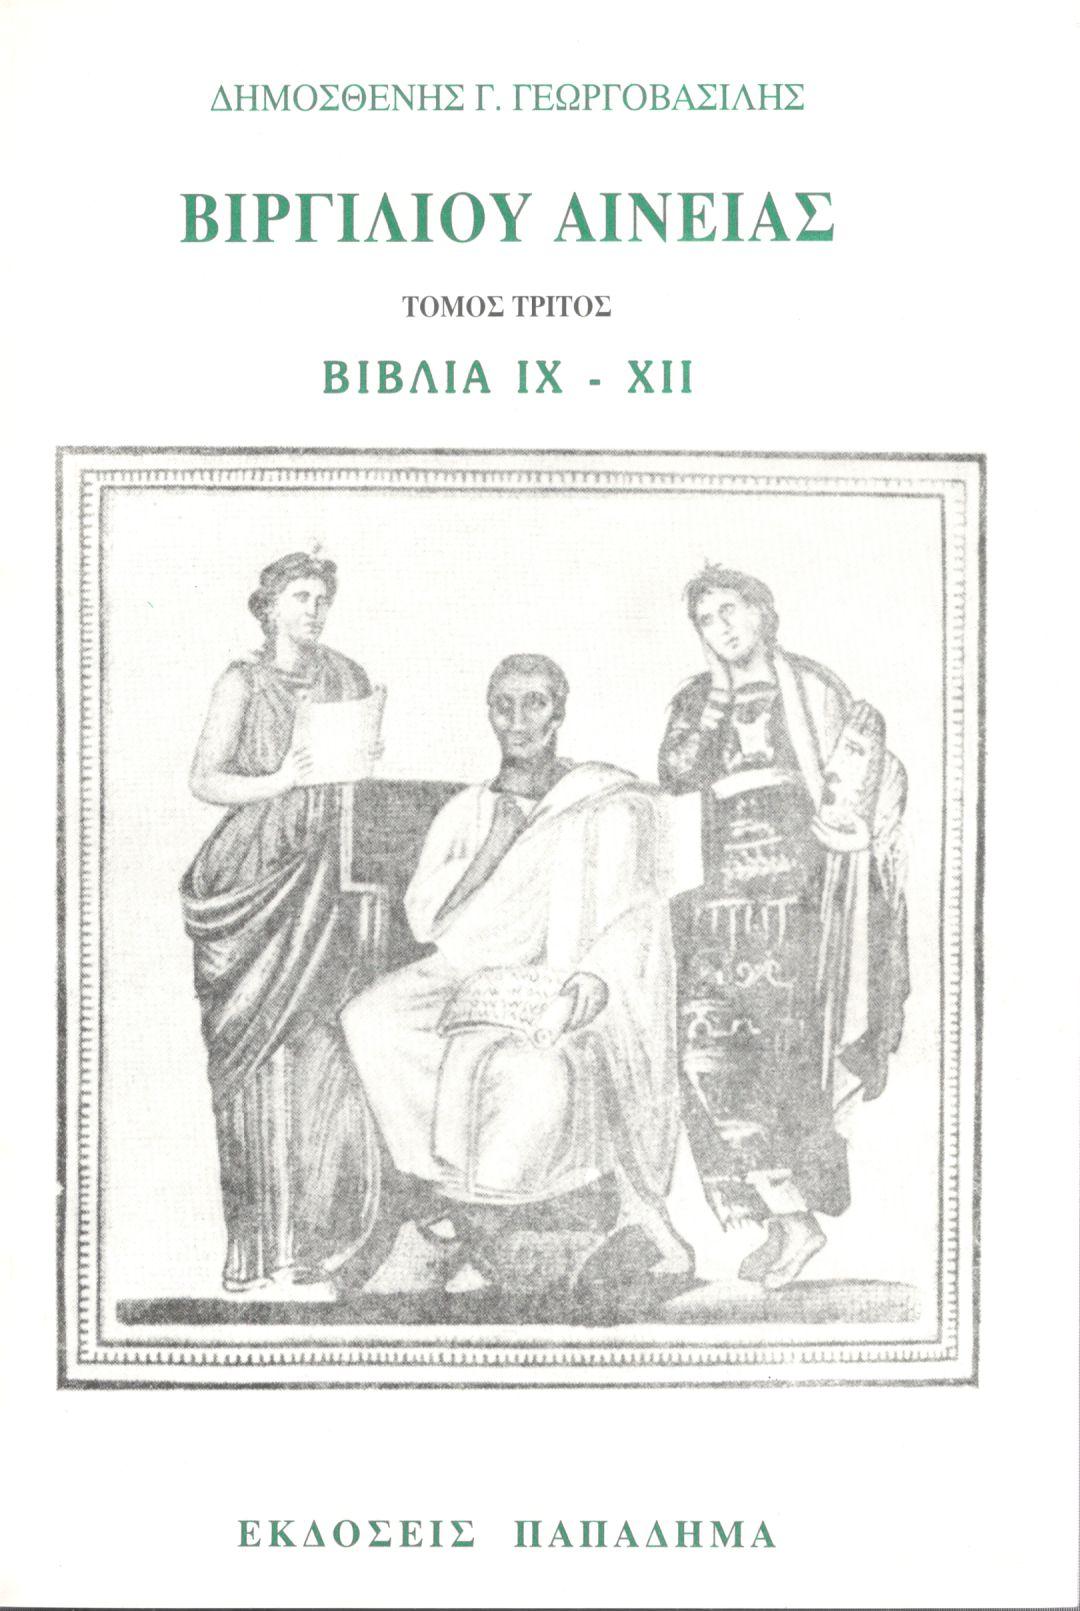 ΒΙΡΓΙΛΙΟΥ ΑΙΝΕΙΑΣ, ΤΡΙΤΟΣ ΤΟΜΟΣ, ΒΙΒΛΙΑ IX-XII